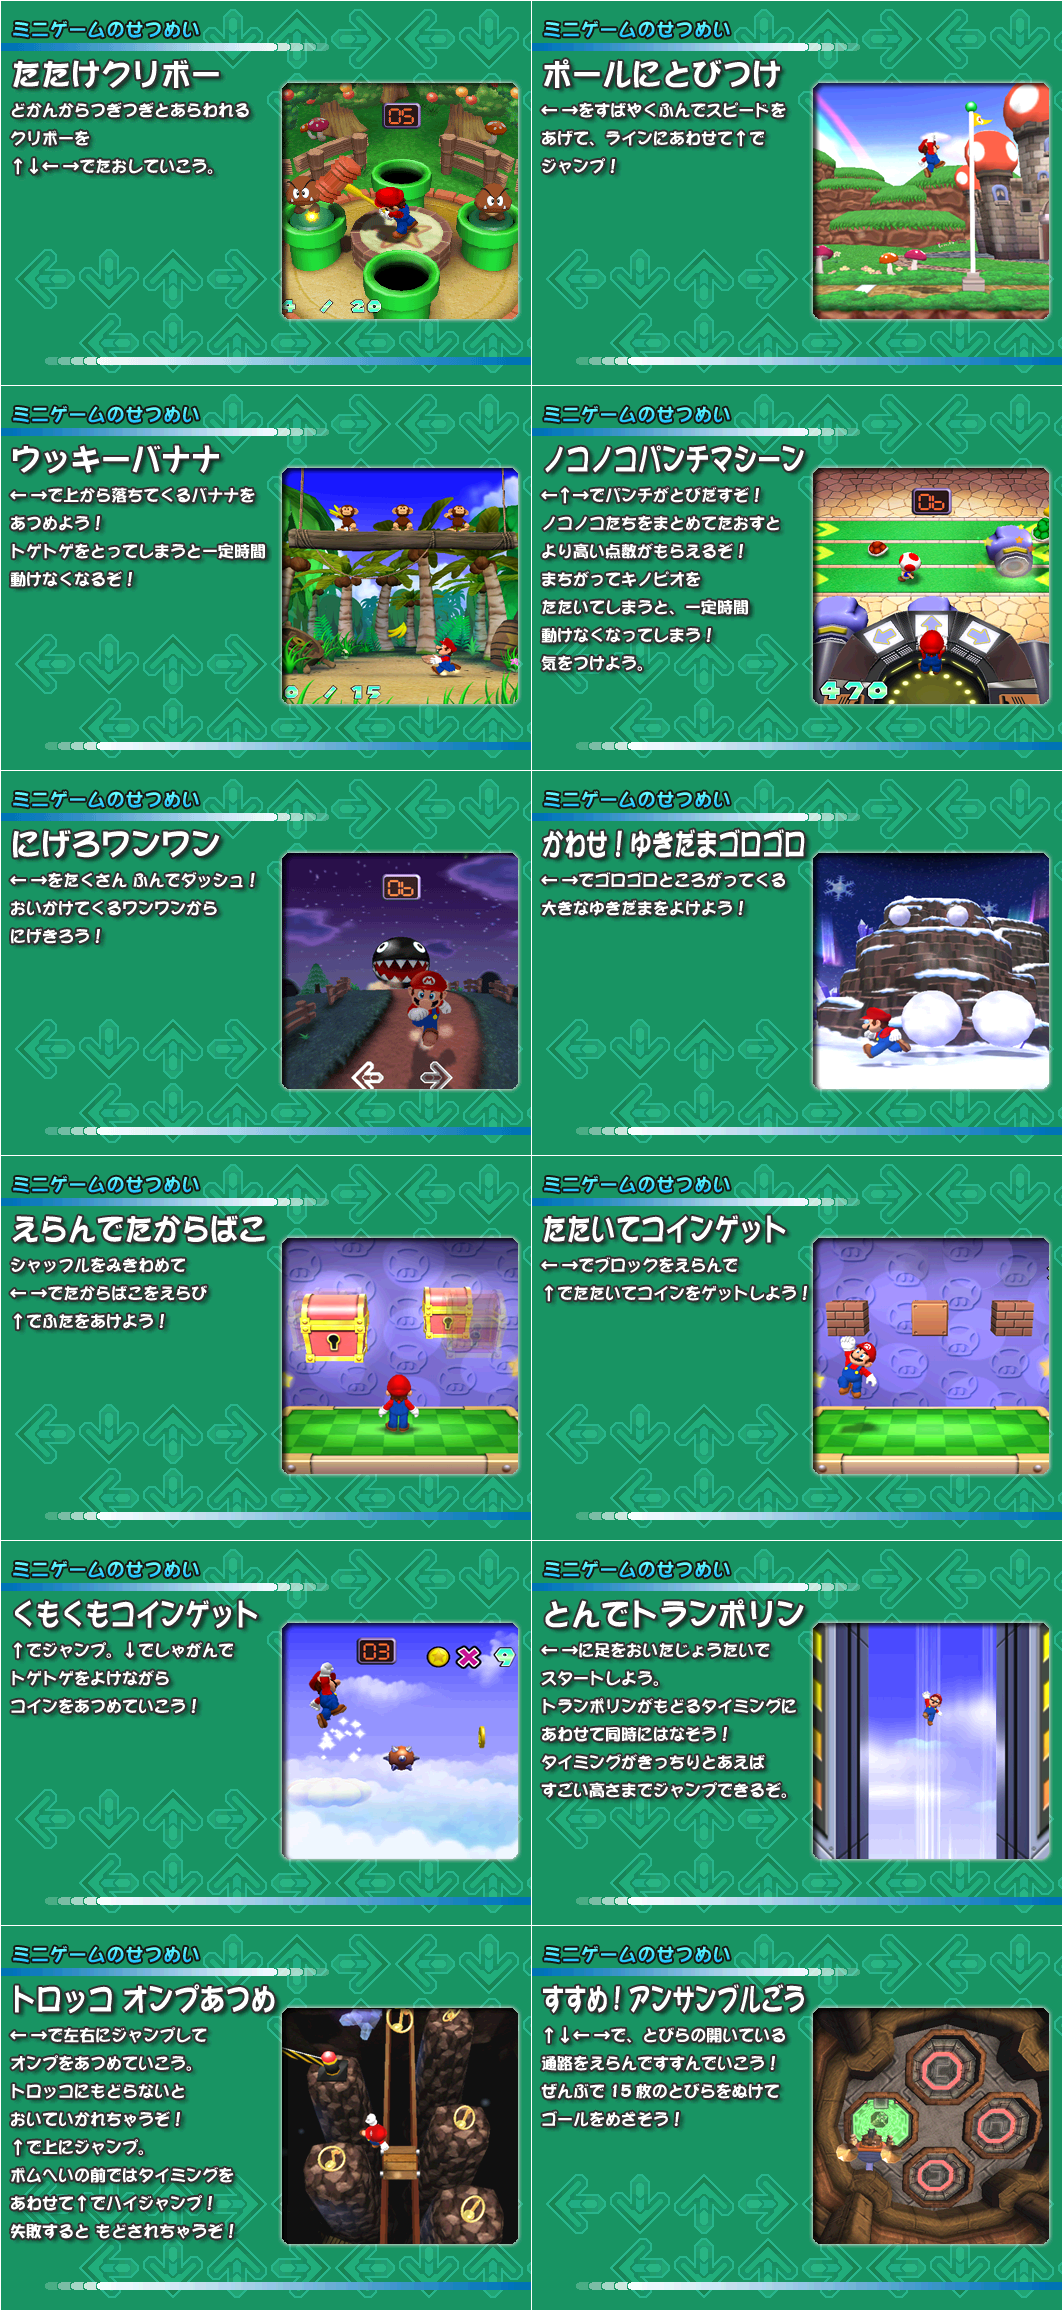 Minigame Instructions (Japanese)